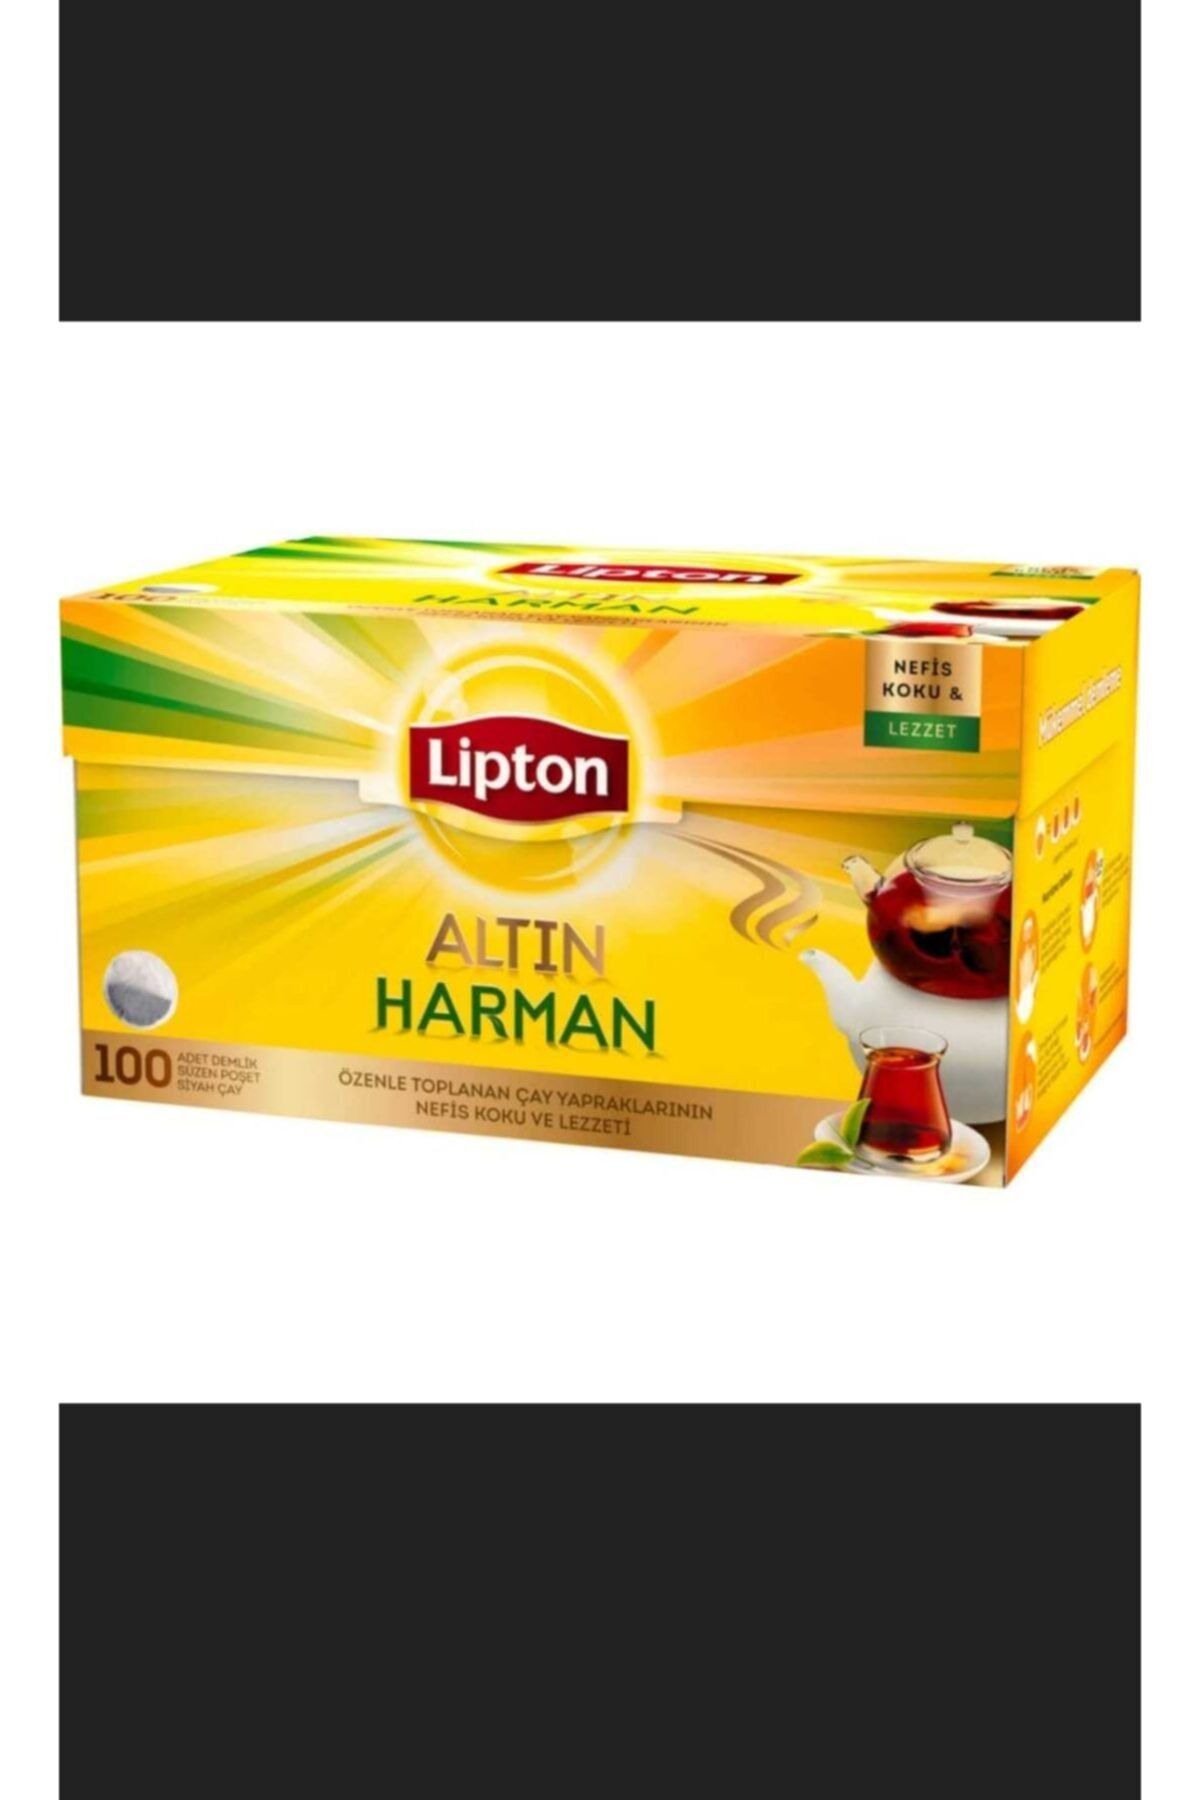 Lipton Altın Harman Demlik Poşet Çay 100'lü 6 Paket